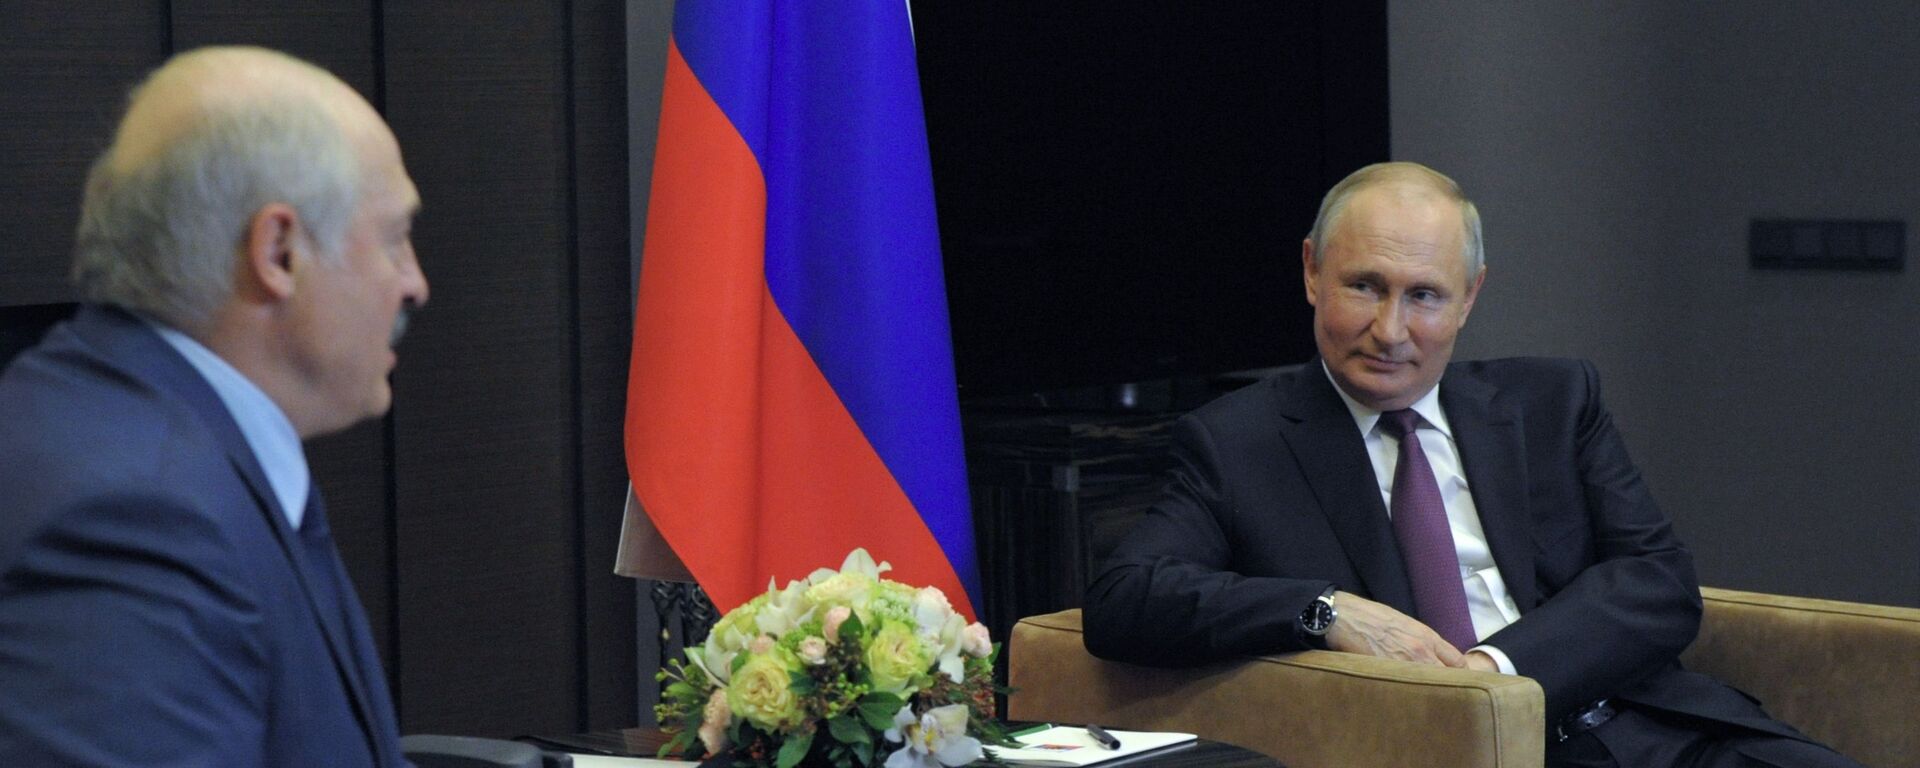 Президент РФ Владимир Путин и президент Беларуси Александр Лукашенко (слева) во время встречи в Сочи, 28 мая 2021 - Sputnik Латвия, 1920, 28.05.2021